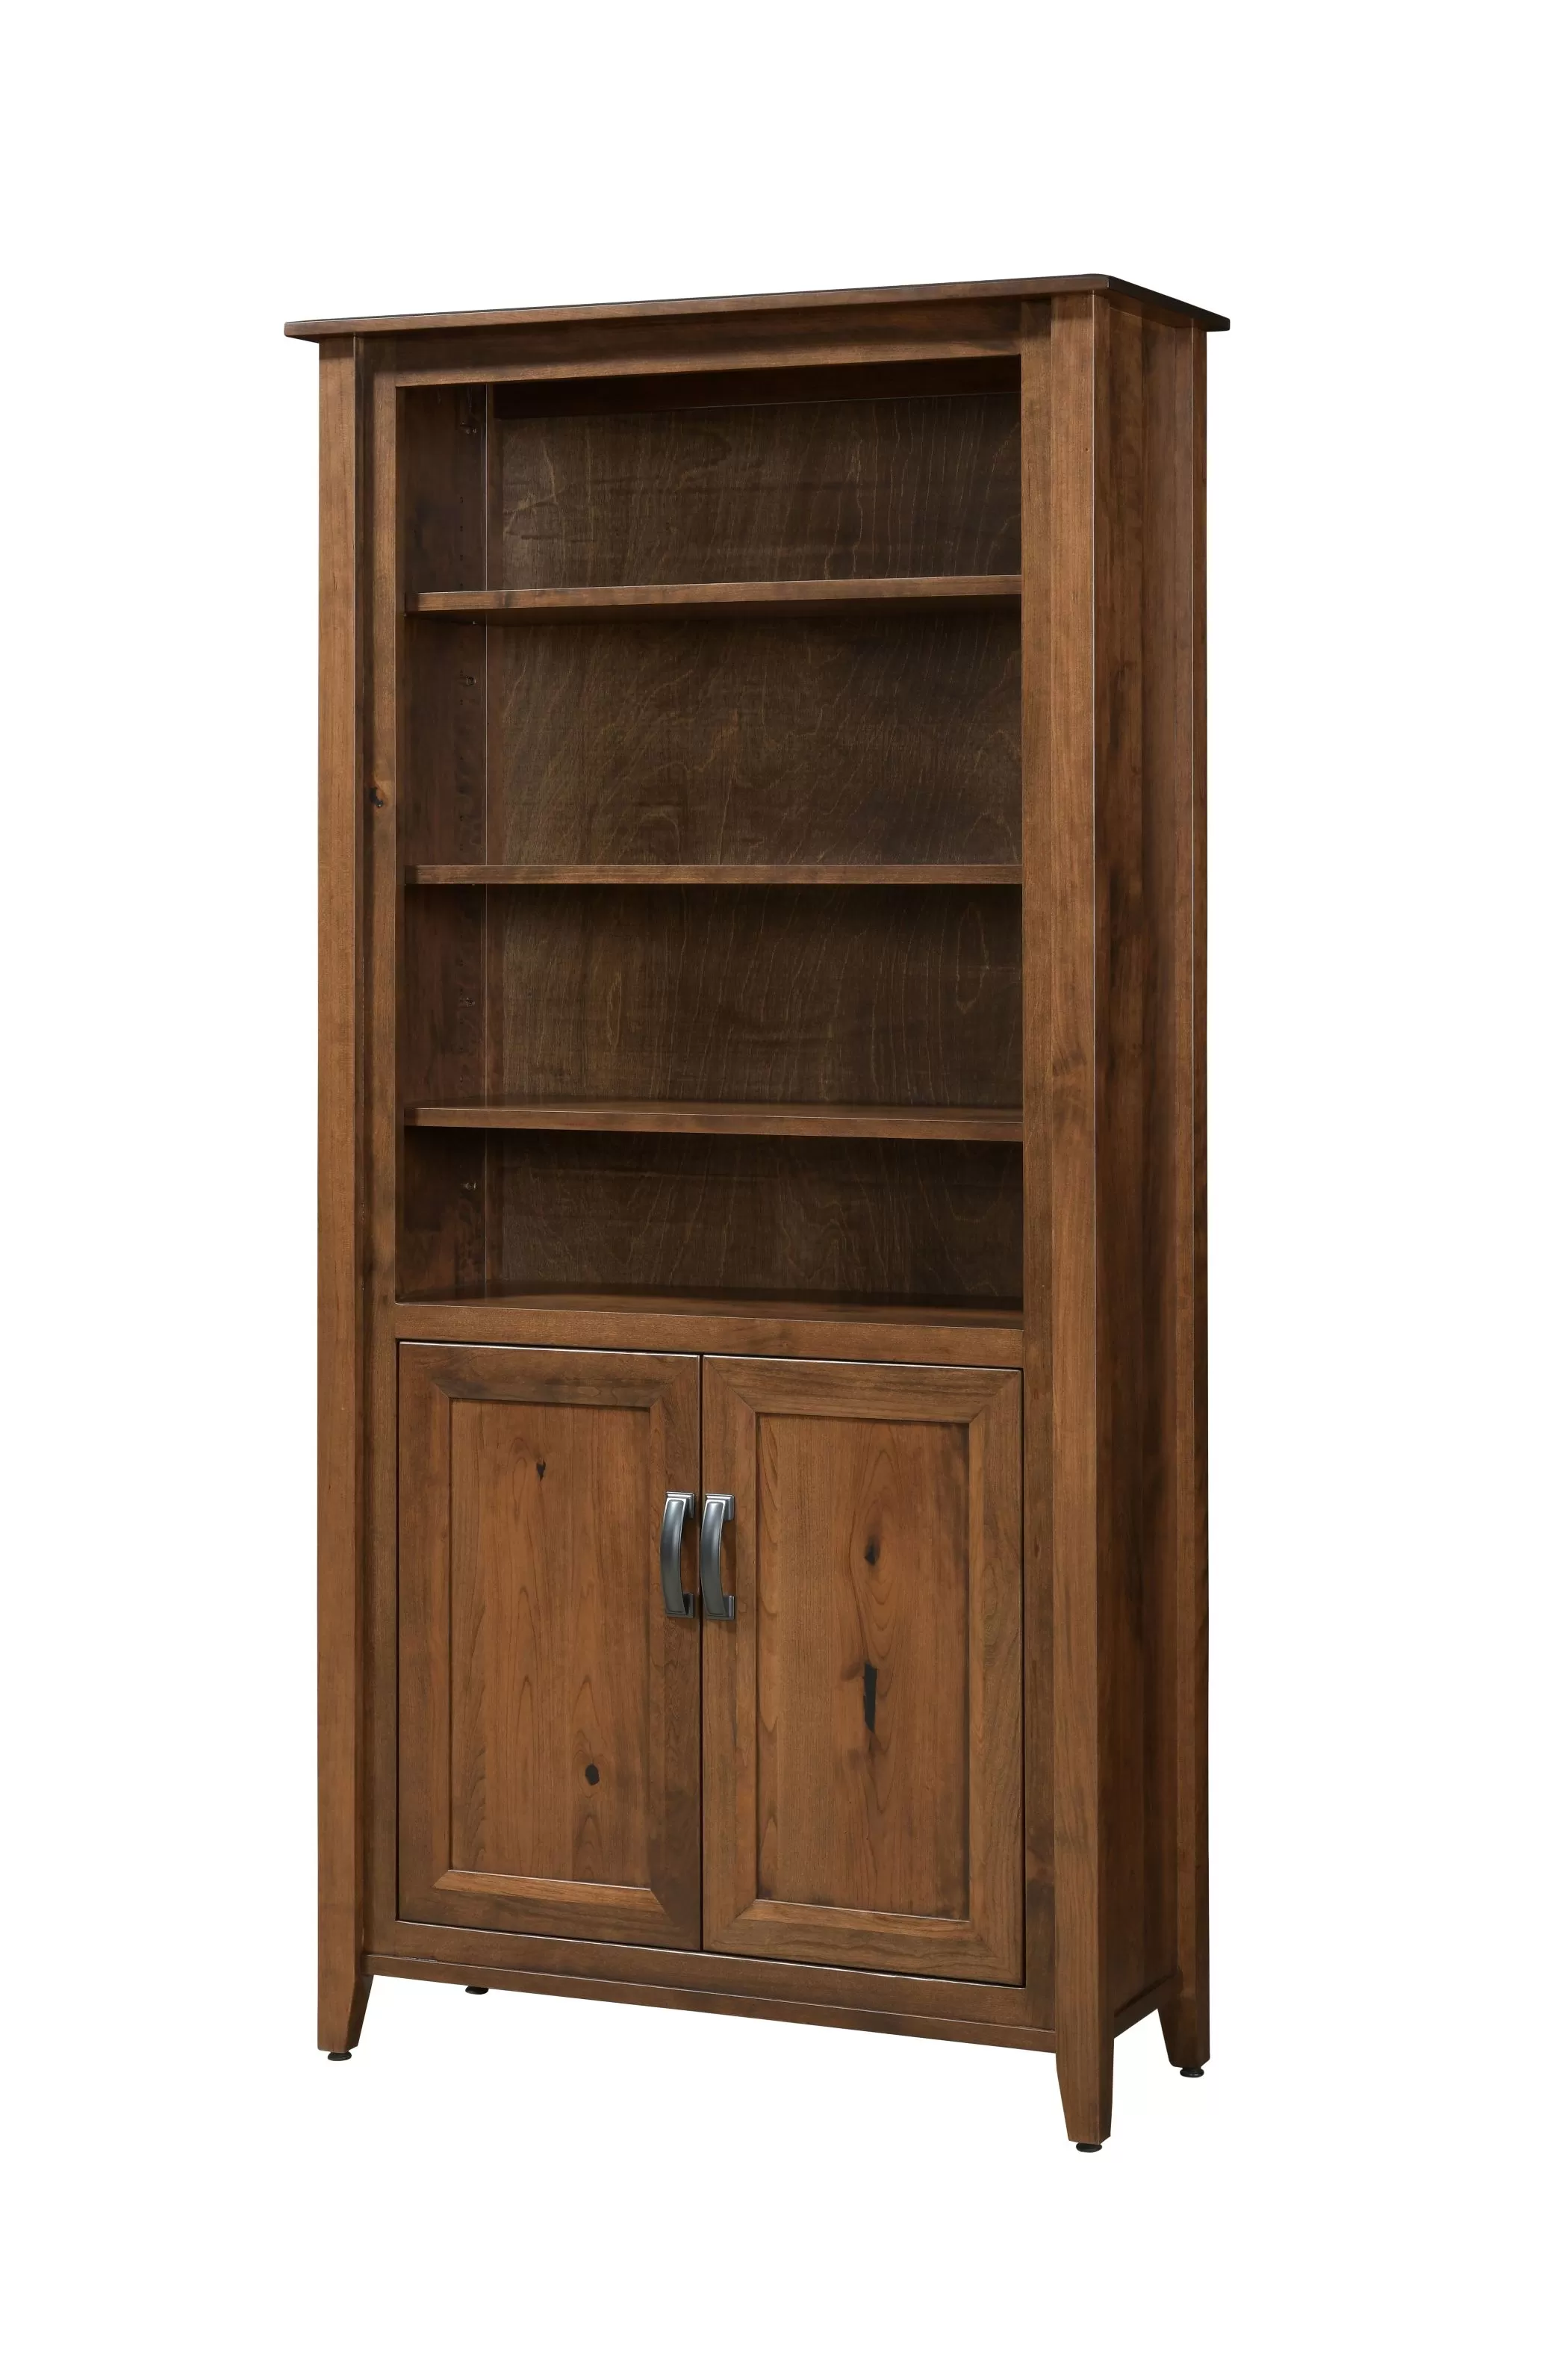 36" Ventura Bookcase with Doors